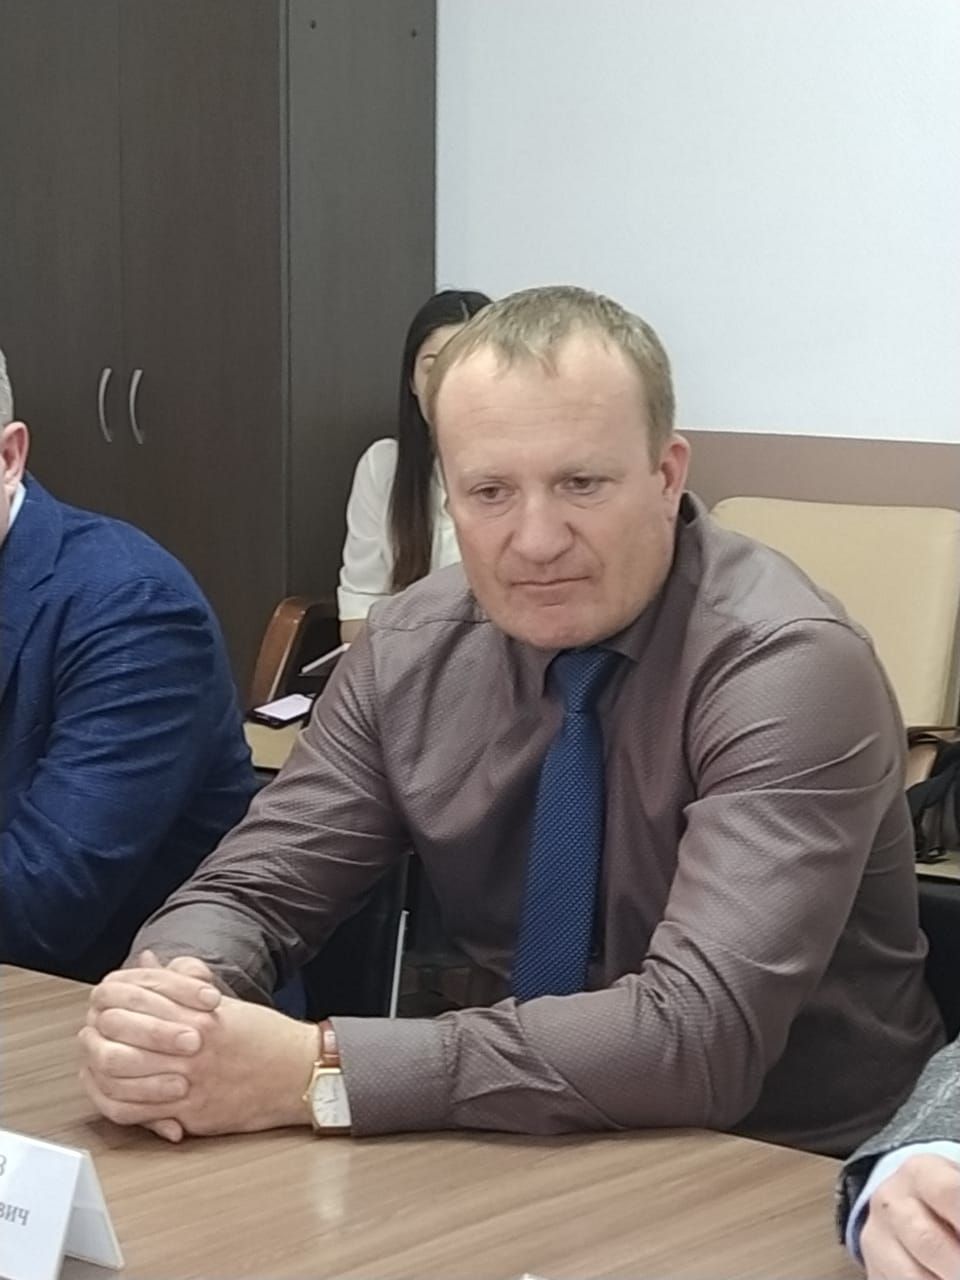 Три новых резидента ТОСЭР в Менделеевске создадут более 50 рабочих мест